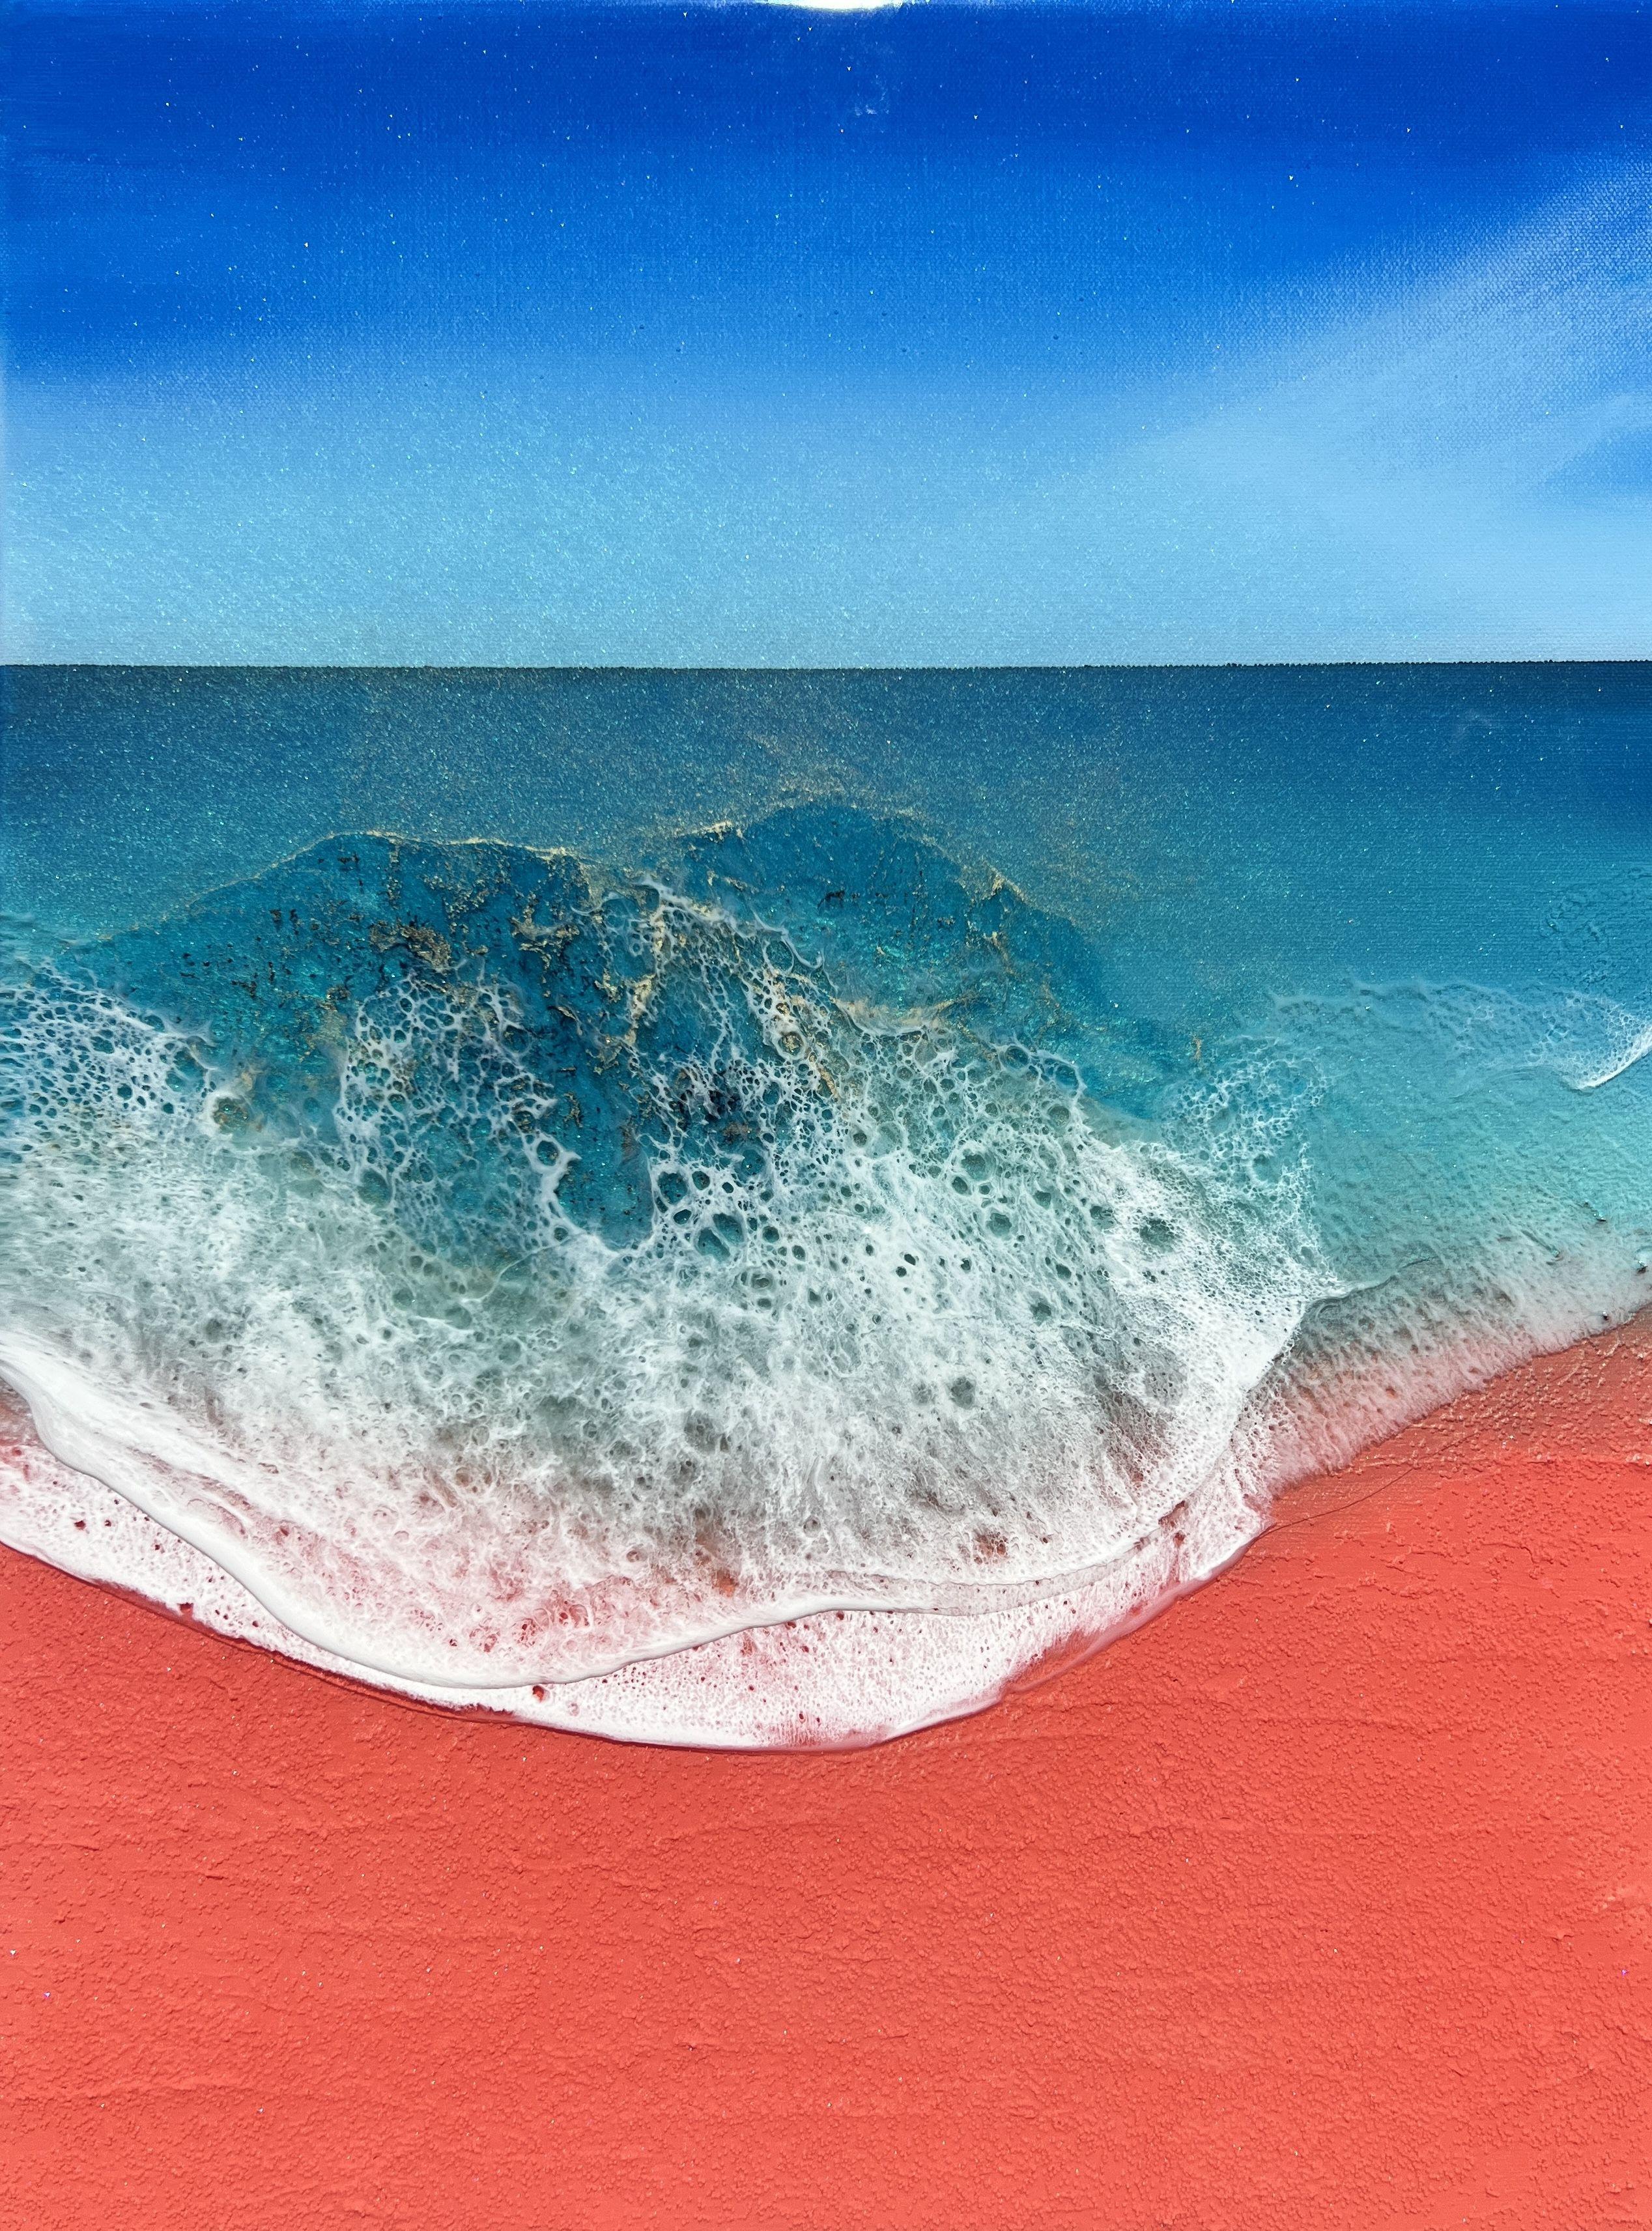 Peinture - plage de sable rose Elafonisi n°1, Grèce, acrylique sur toile - Painting de Ana Hefco